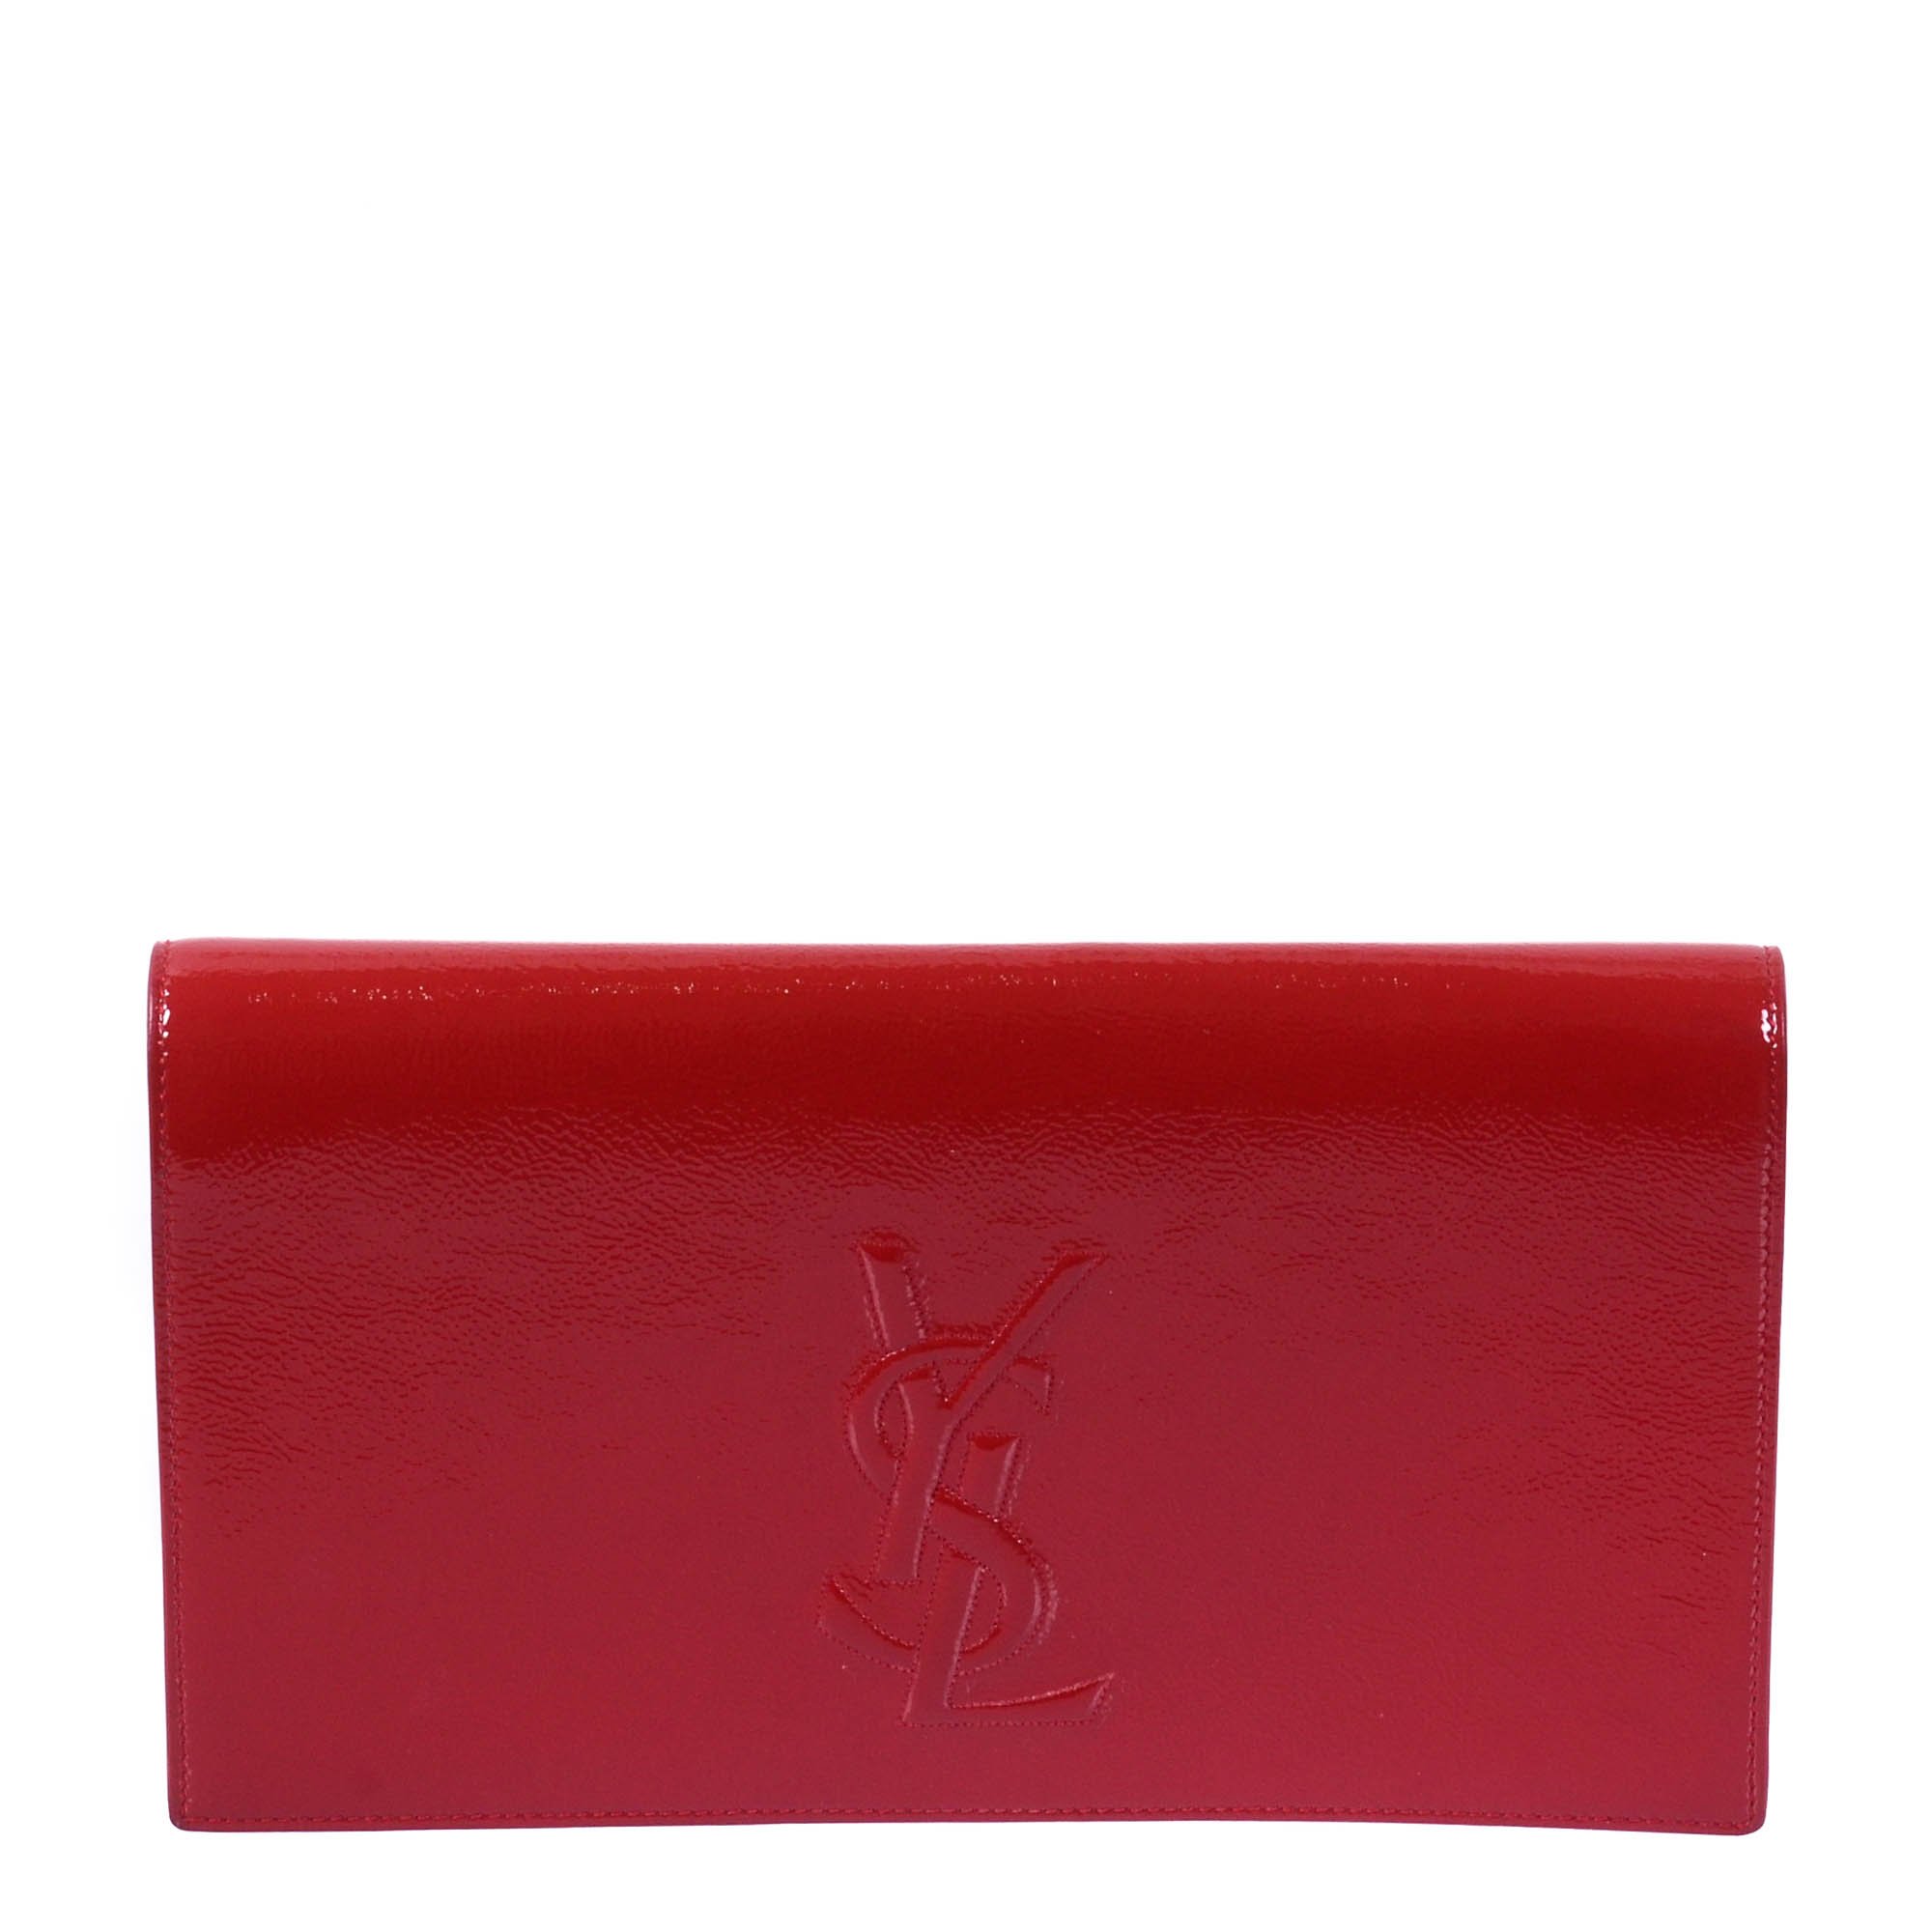 Saint Laurent Paris Red Patent Leather Belle De Jour Flap Clutch